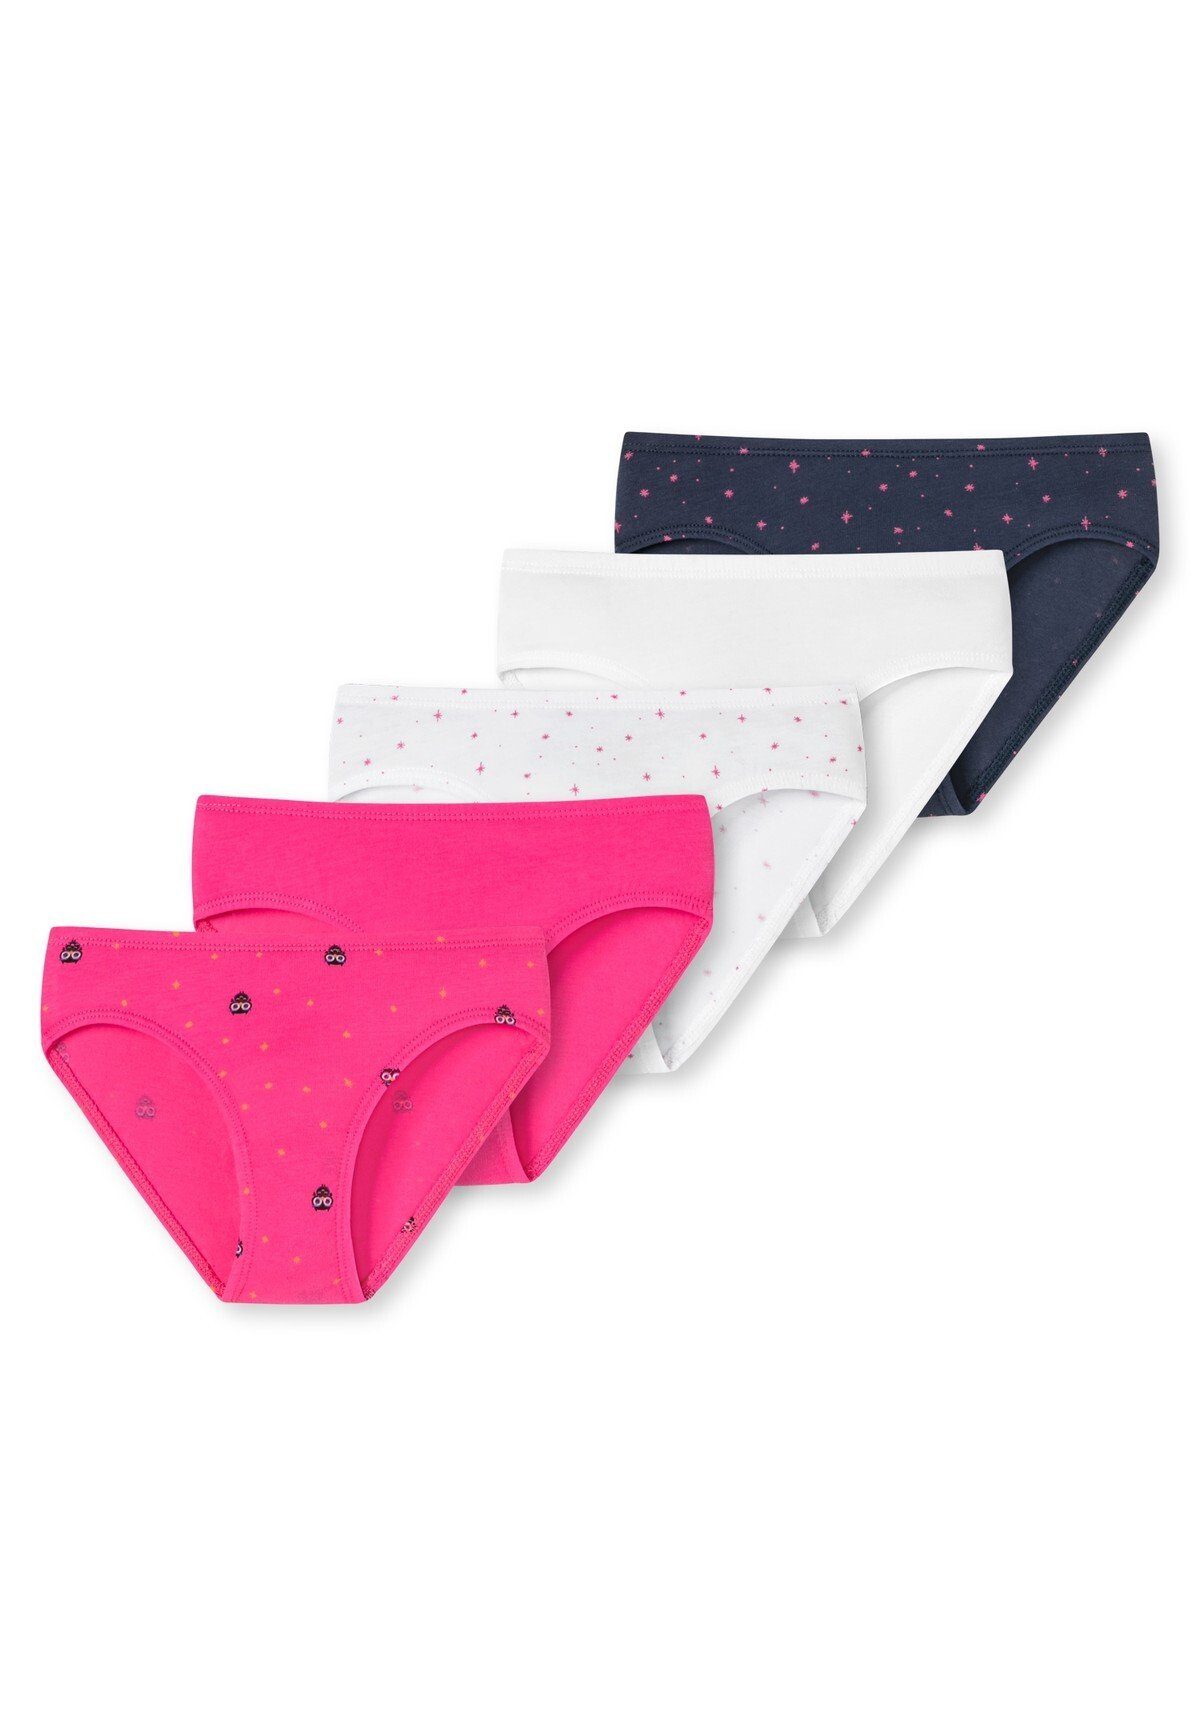 Slip Shorts Unterhose, Schiesser 5er Pack - Pink/Weiß/Dunkelblau Mädchen Pants, Slips